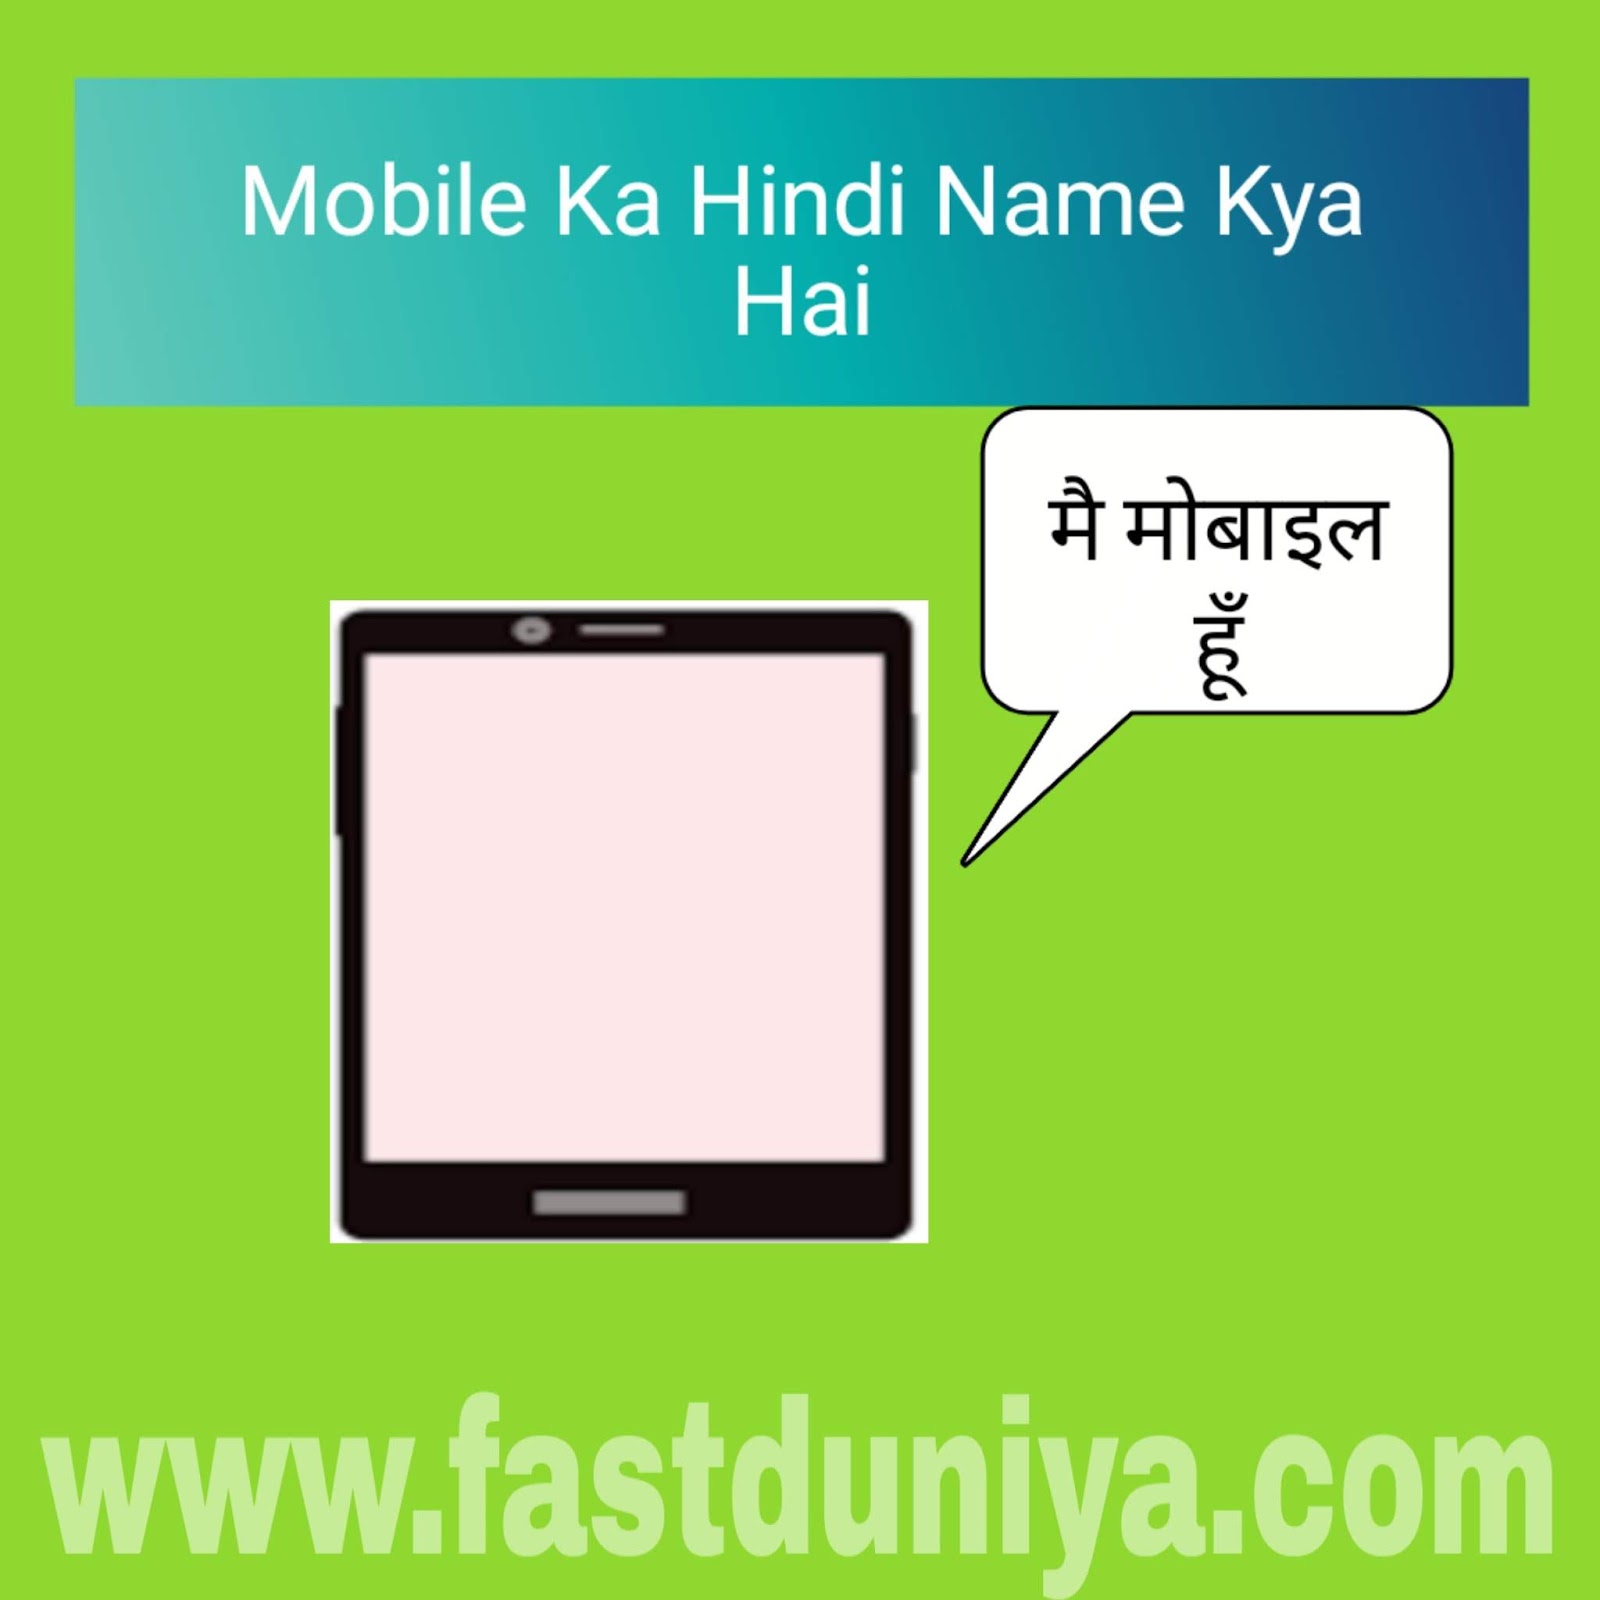 मोबाइल का हिन्दी नाम क्या है? Mobile ka hindi name kya hai